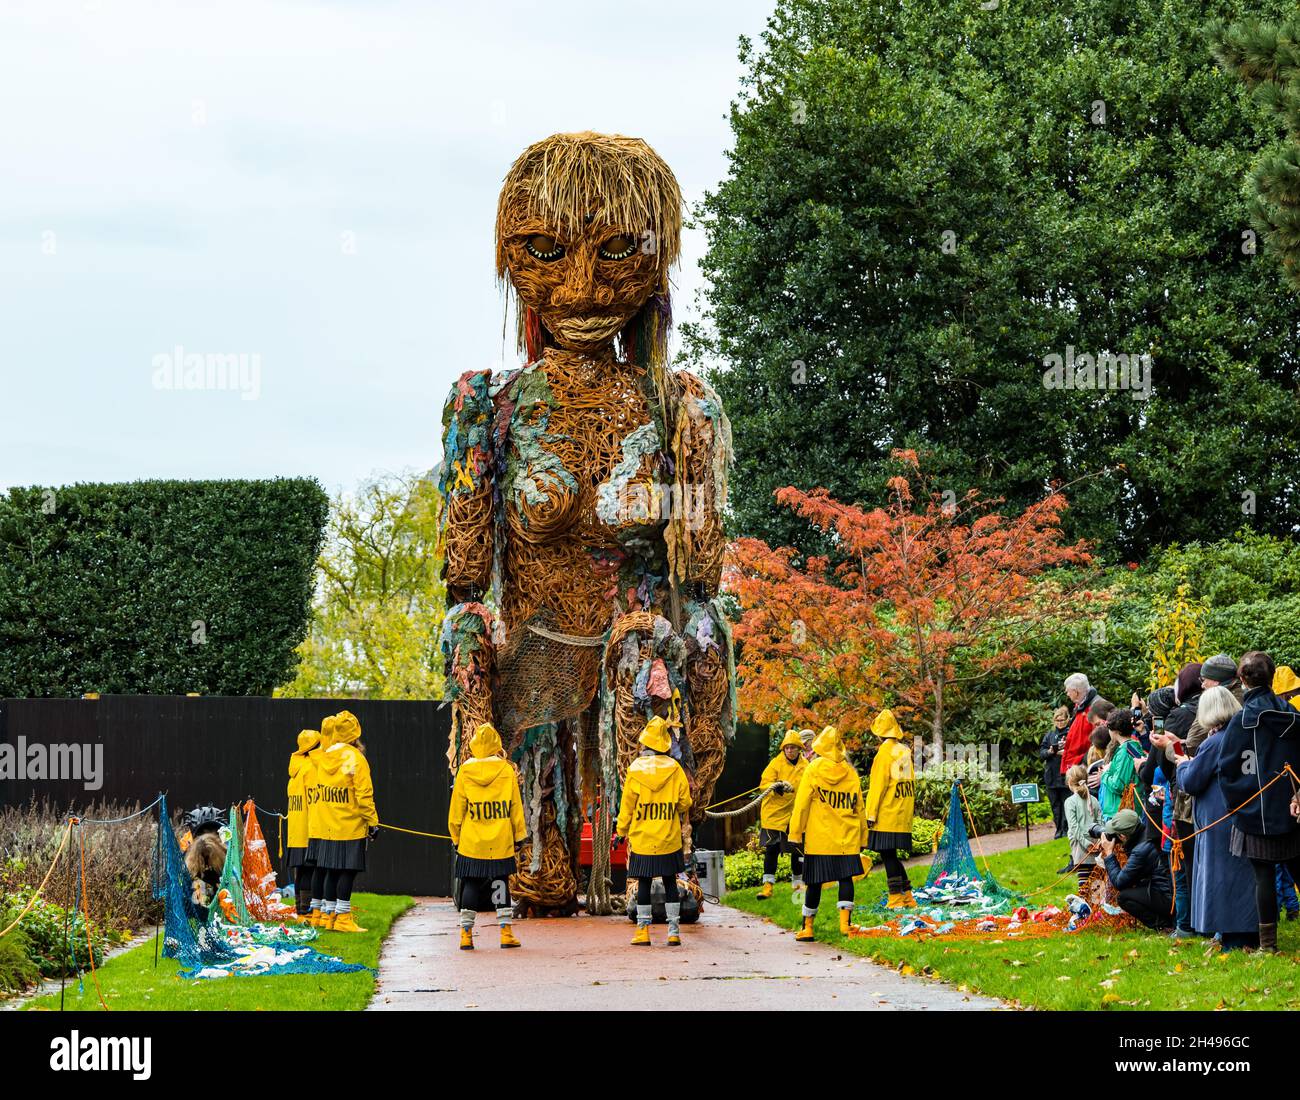 Des gens qui regardent la tempête de marionnettes géantes, des matériaux recyclés de forme, au Royal Botanic Garden, Édimbourg, Écosse, Royaume-Uni Banque D'Images